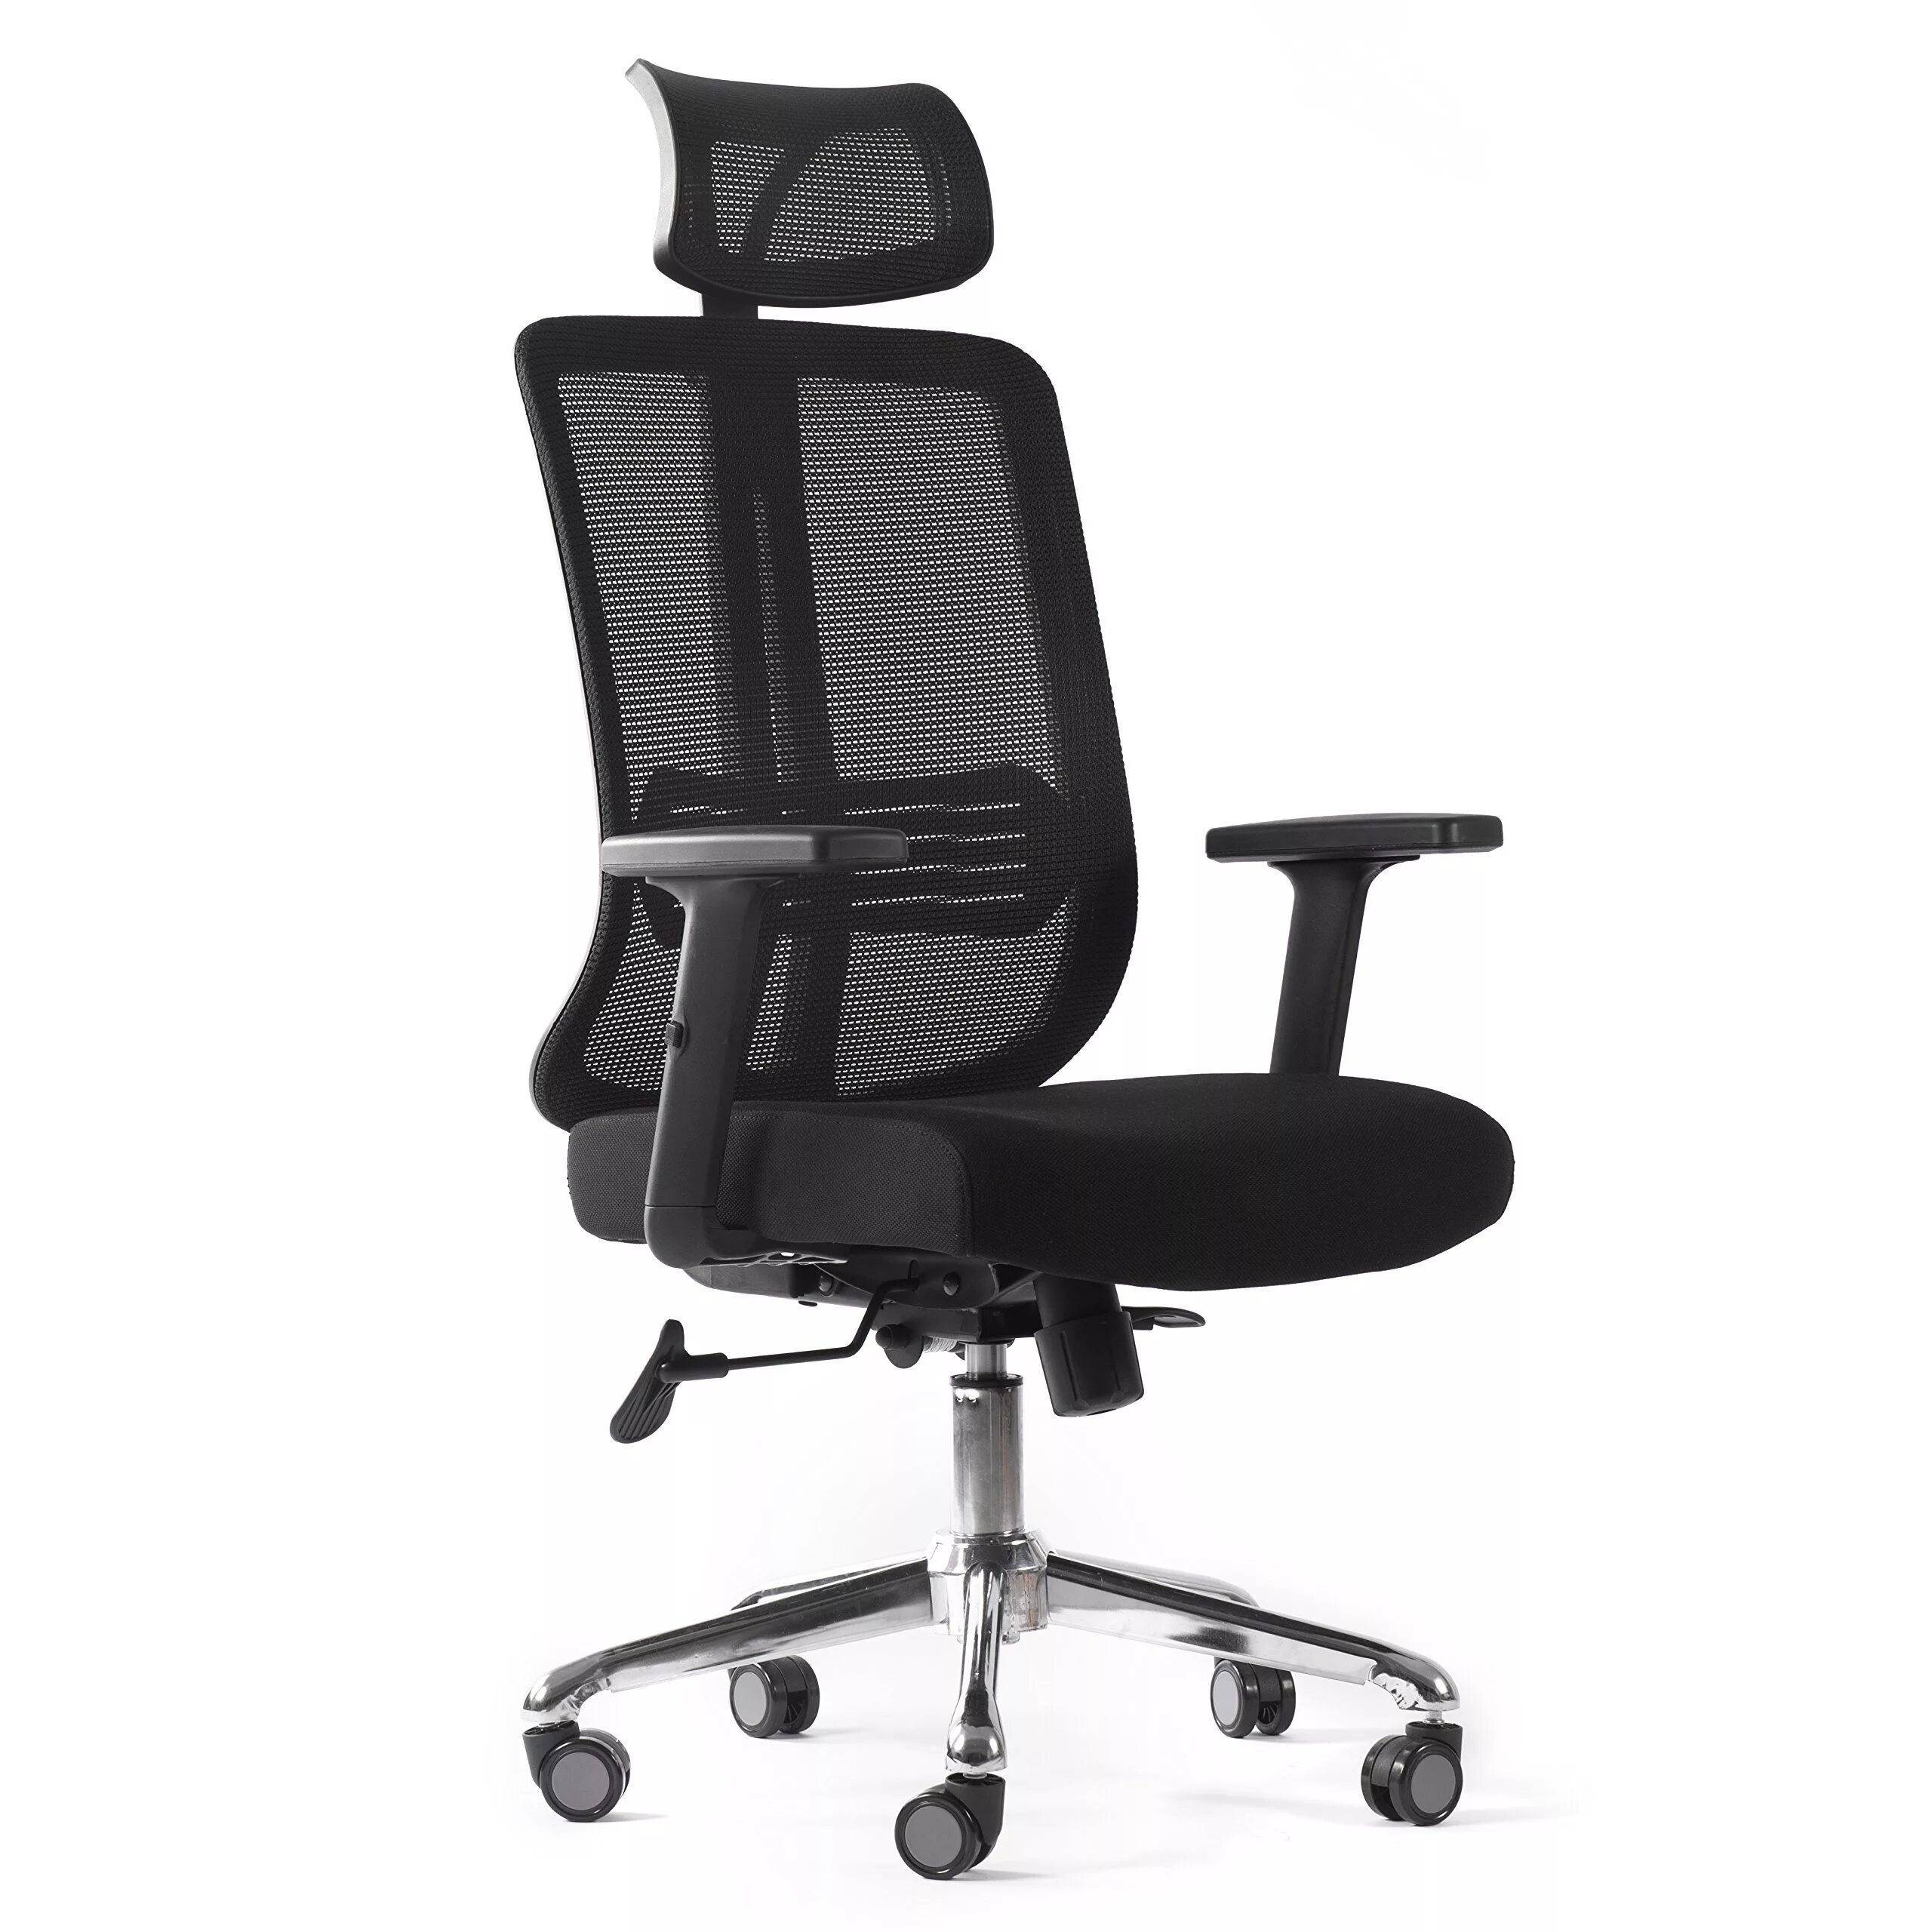 Кресло офисное Dafna d68-1-h. Кресла офисная для персонала lb Mesh c ?. Стул офисный с сетчатой спинкой. Кресло с сетчатой спинкой.